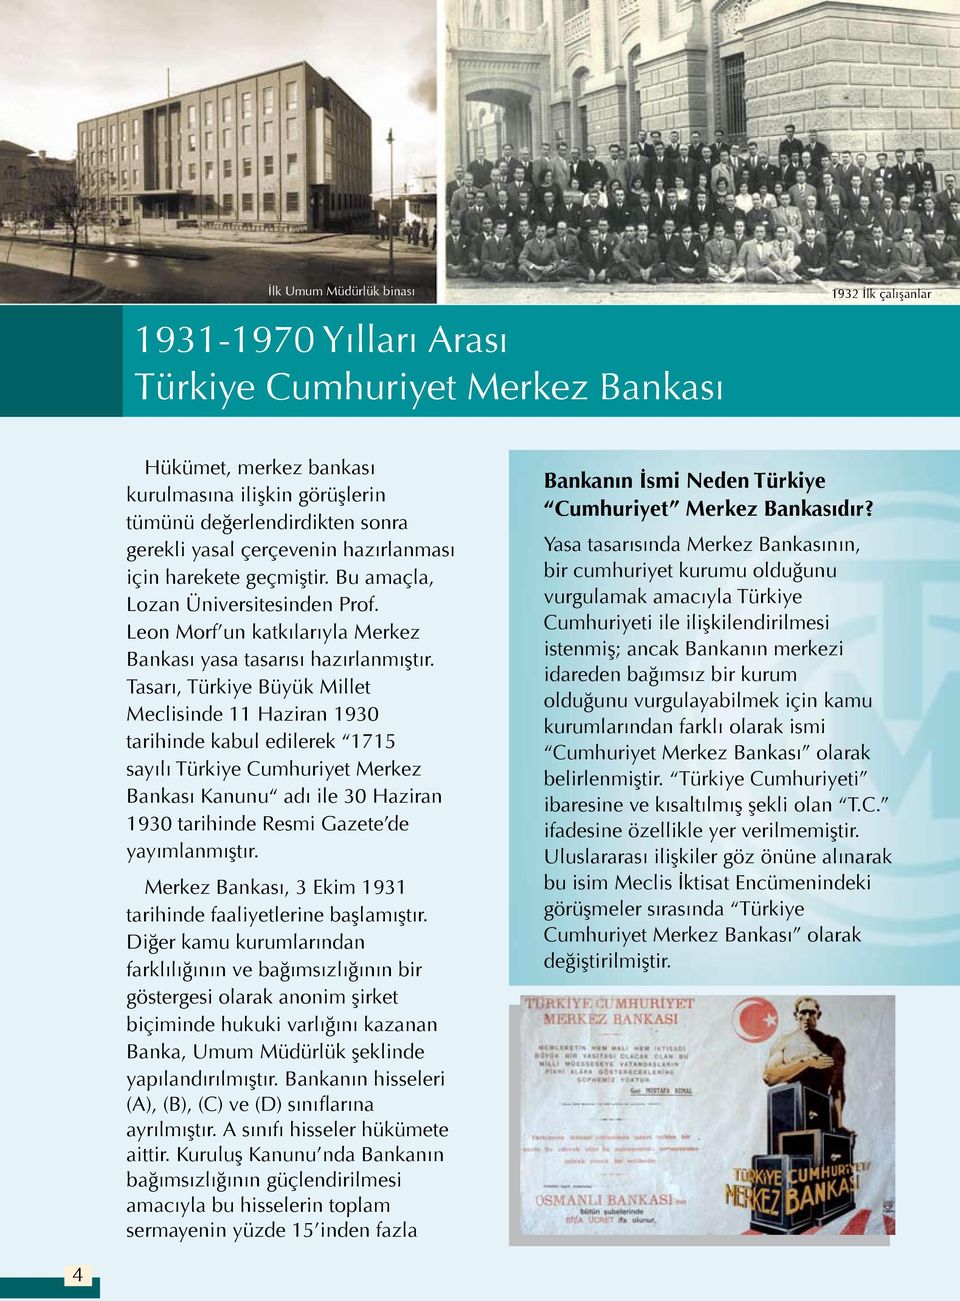 Tasarı, Türkiye Büyük Millet Meclisinde 11 Haziran 1930 tarihinde kabul edilerek 1715 sayılı Türkiye Cumhuriyet Merkez Bankası Kanunu adı ile 30 Haziran 1930 tarihinde Resmi Gazete de yayımlanmıştır.